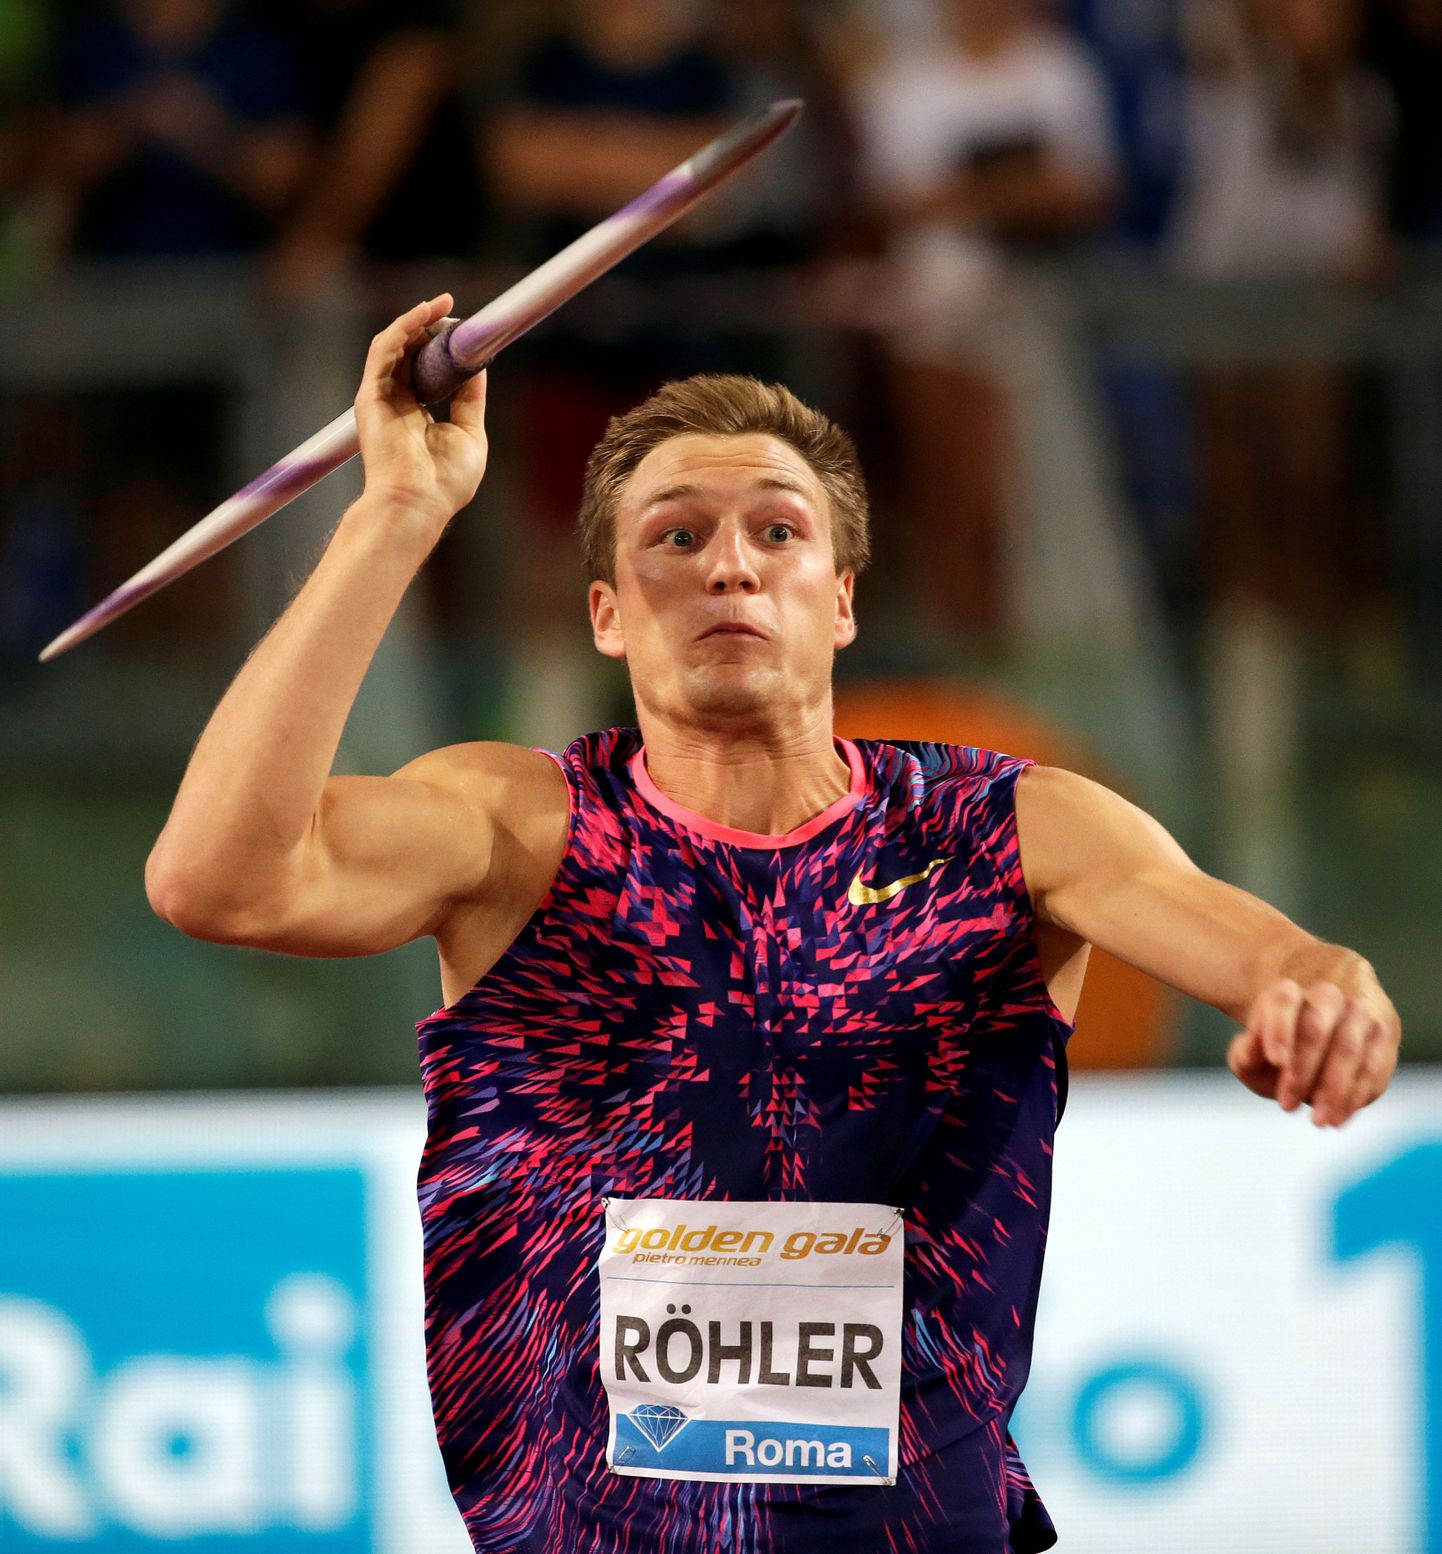 Meeste odaviske 2016. aasta olümpiavõitja Thomas Röhler (Saksamaa) tõusis maikuus visatud 93.90ga maailma kõigi aegade edetabelis teisele kohale.